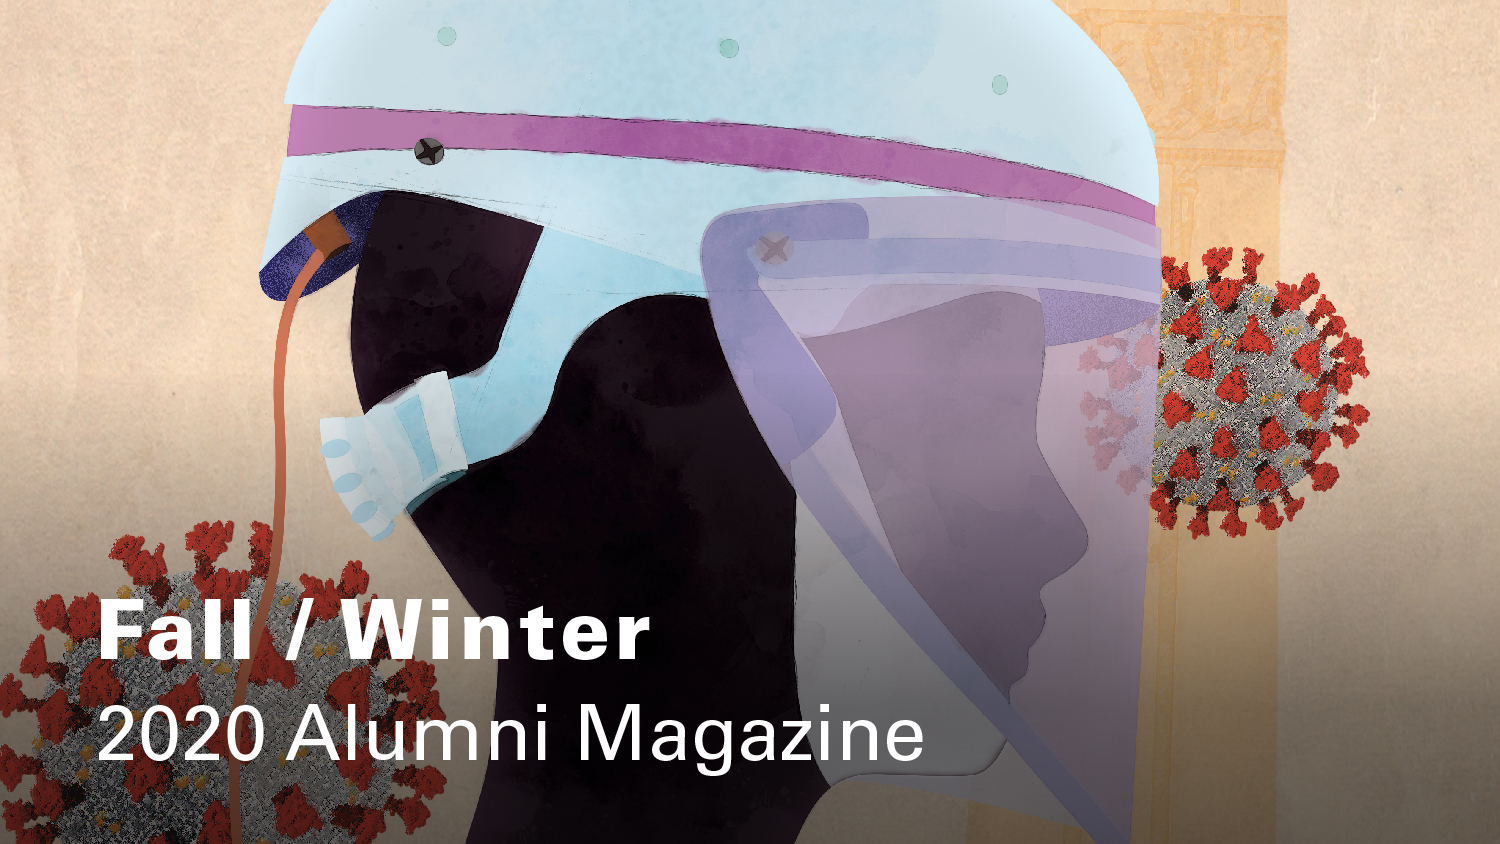 Fall/Winter 2020 Magazine Cover